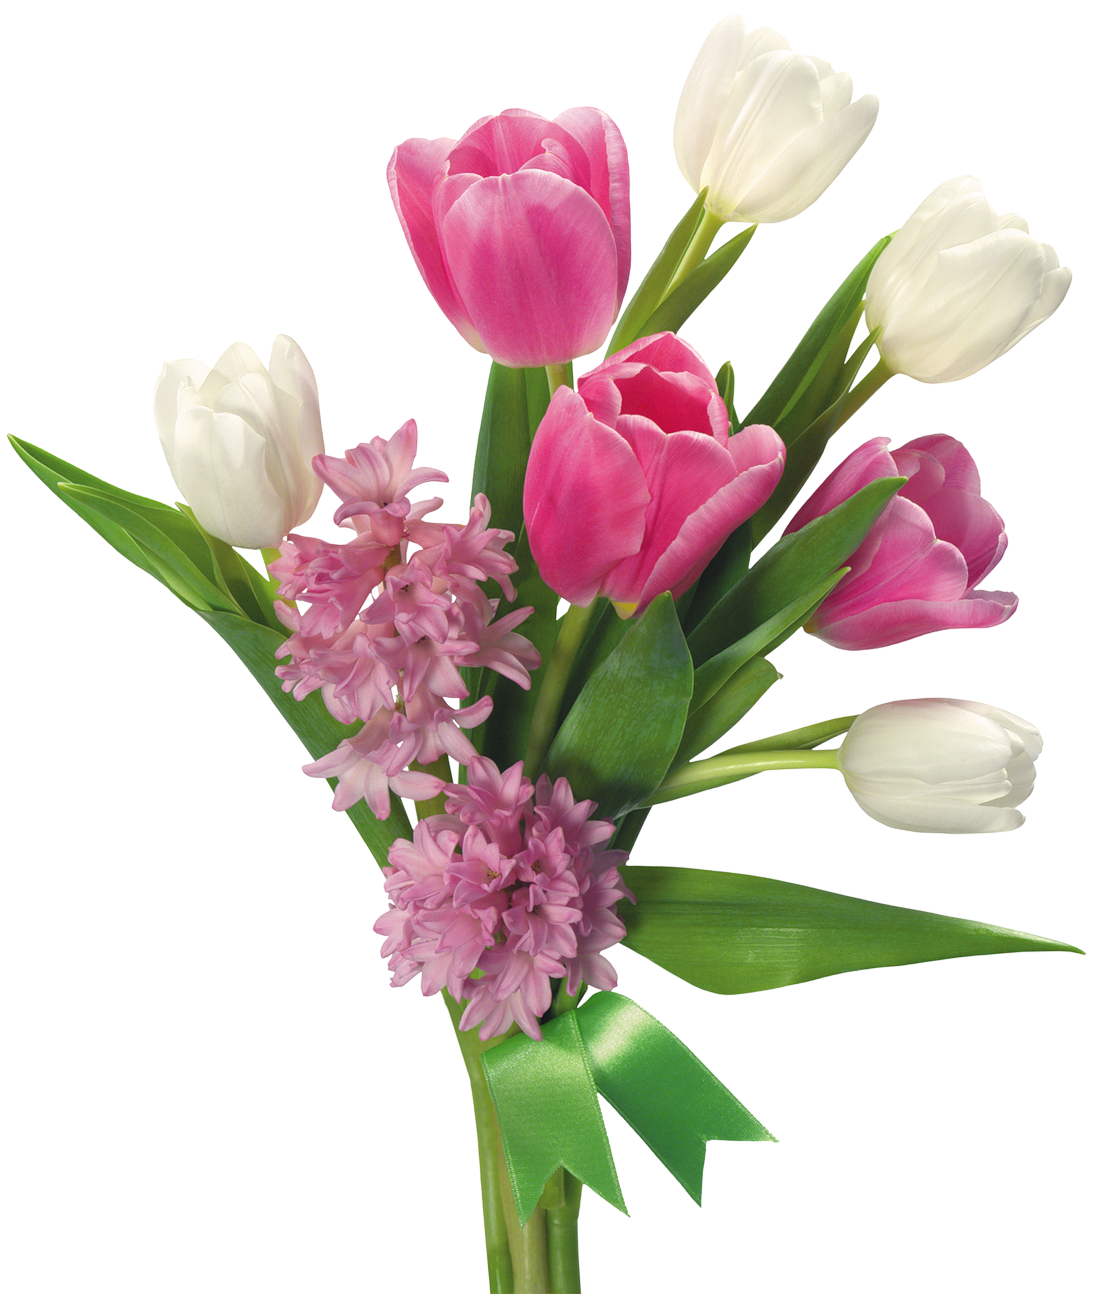 tulip flower bouquet images transparent download #34090